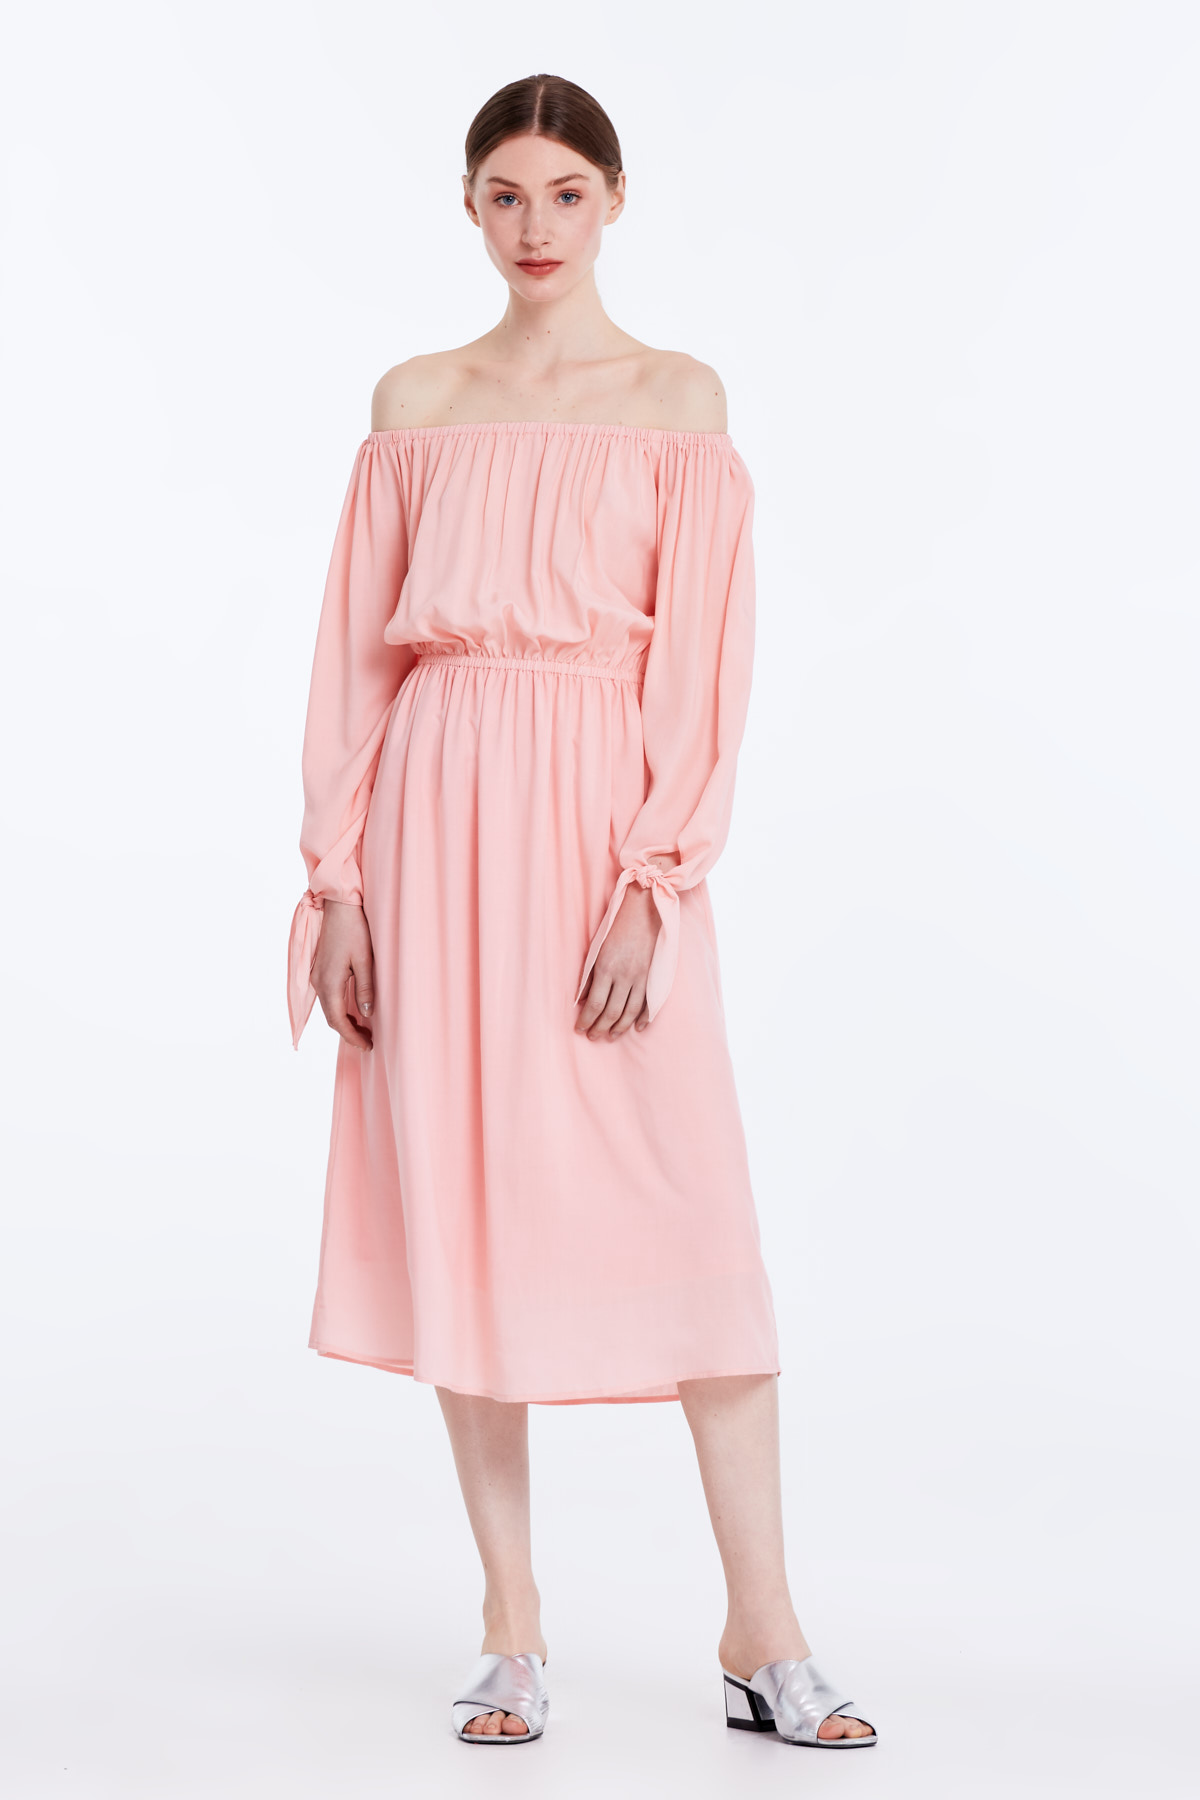 Off-shoulder powder pink dress, photo 2